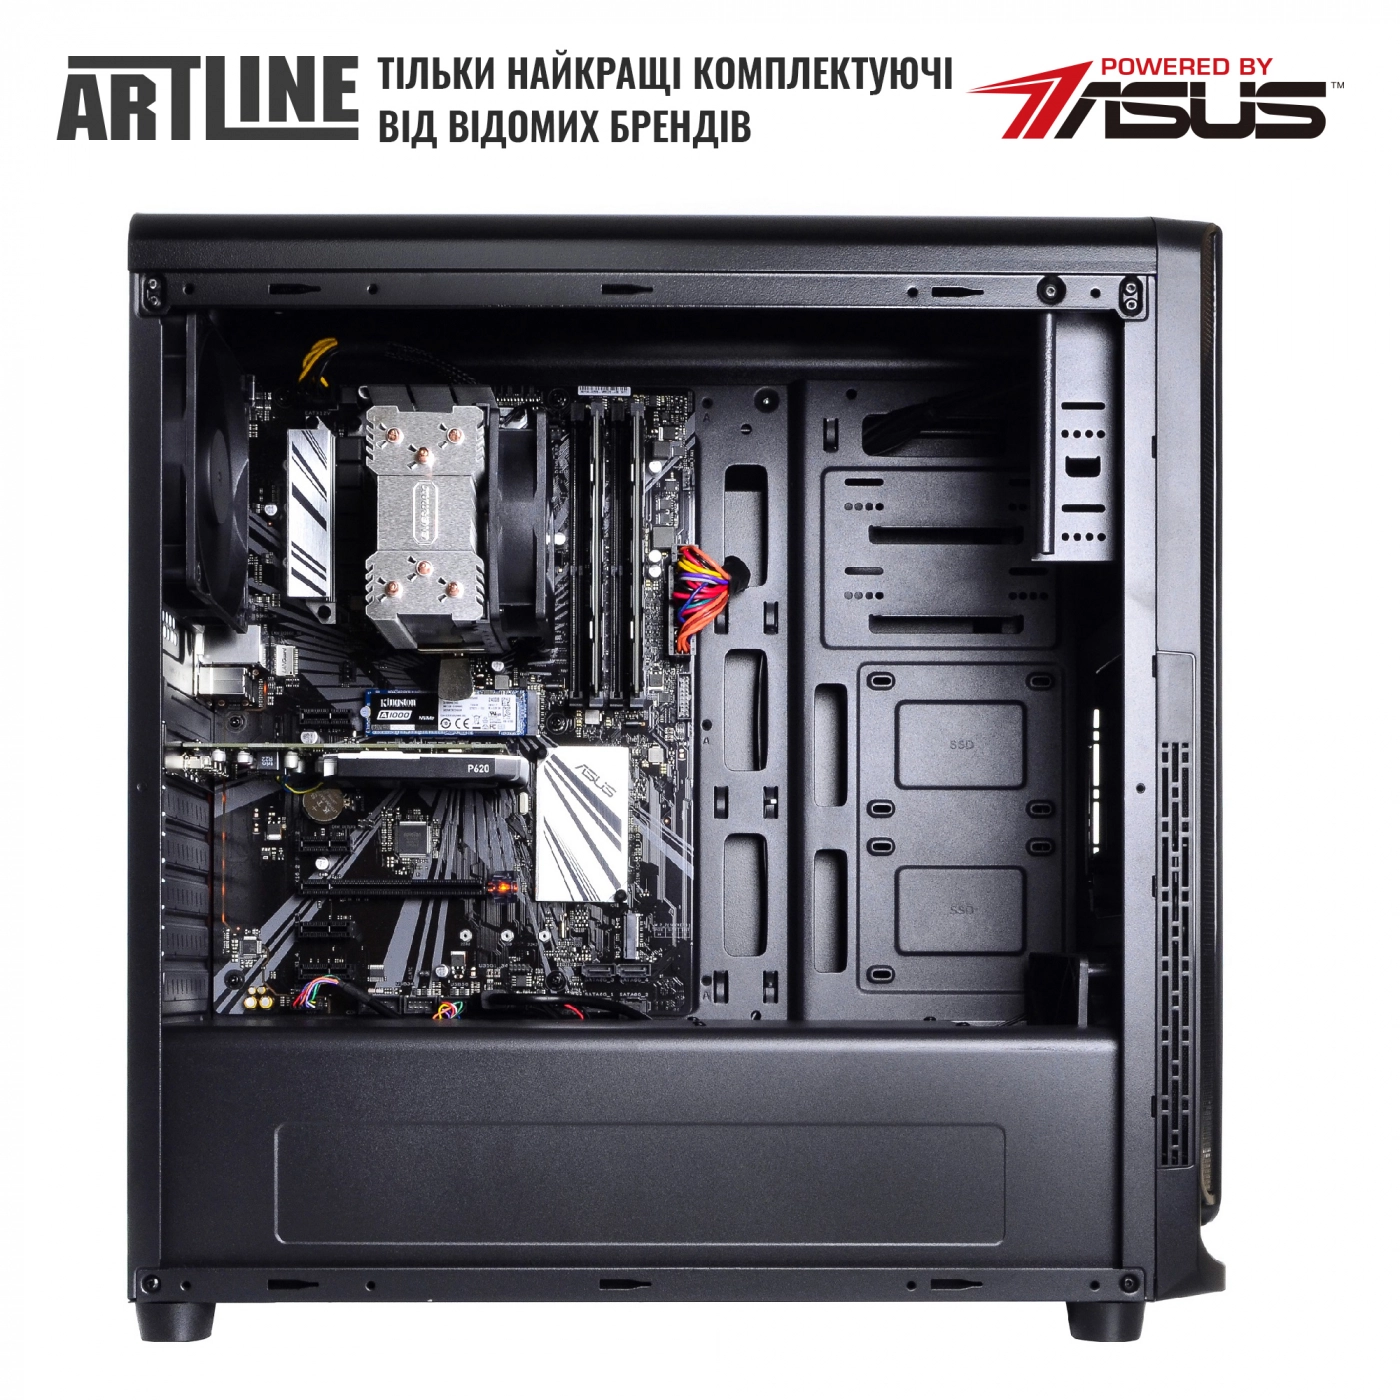 Купить Сервер ARTLINE Business T27v15 - фото 10